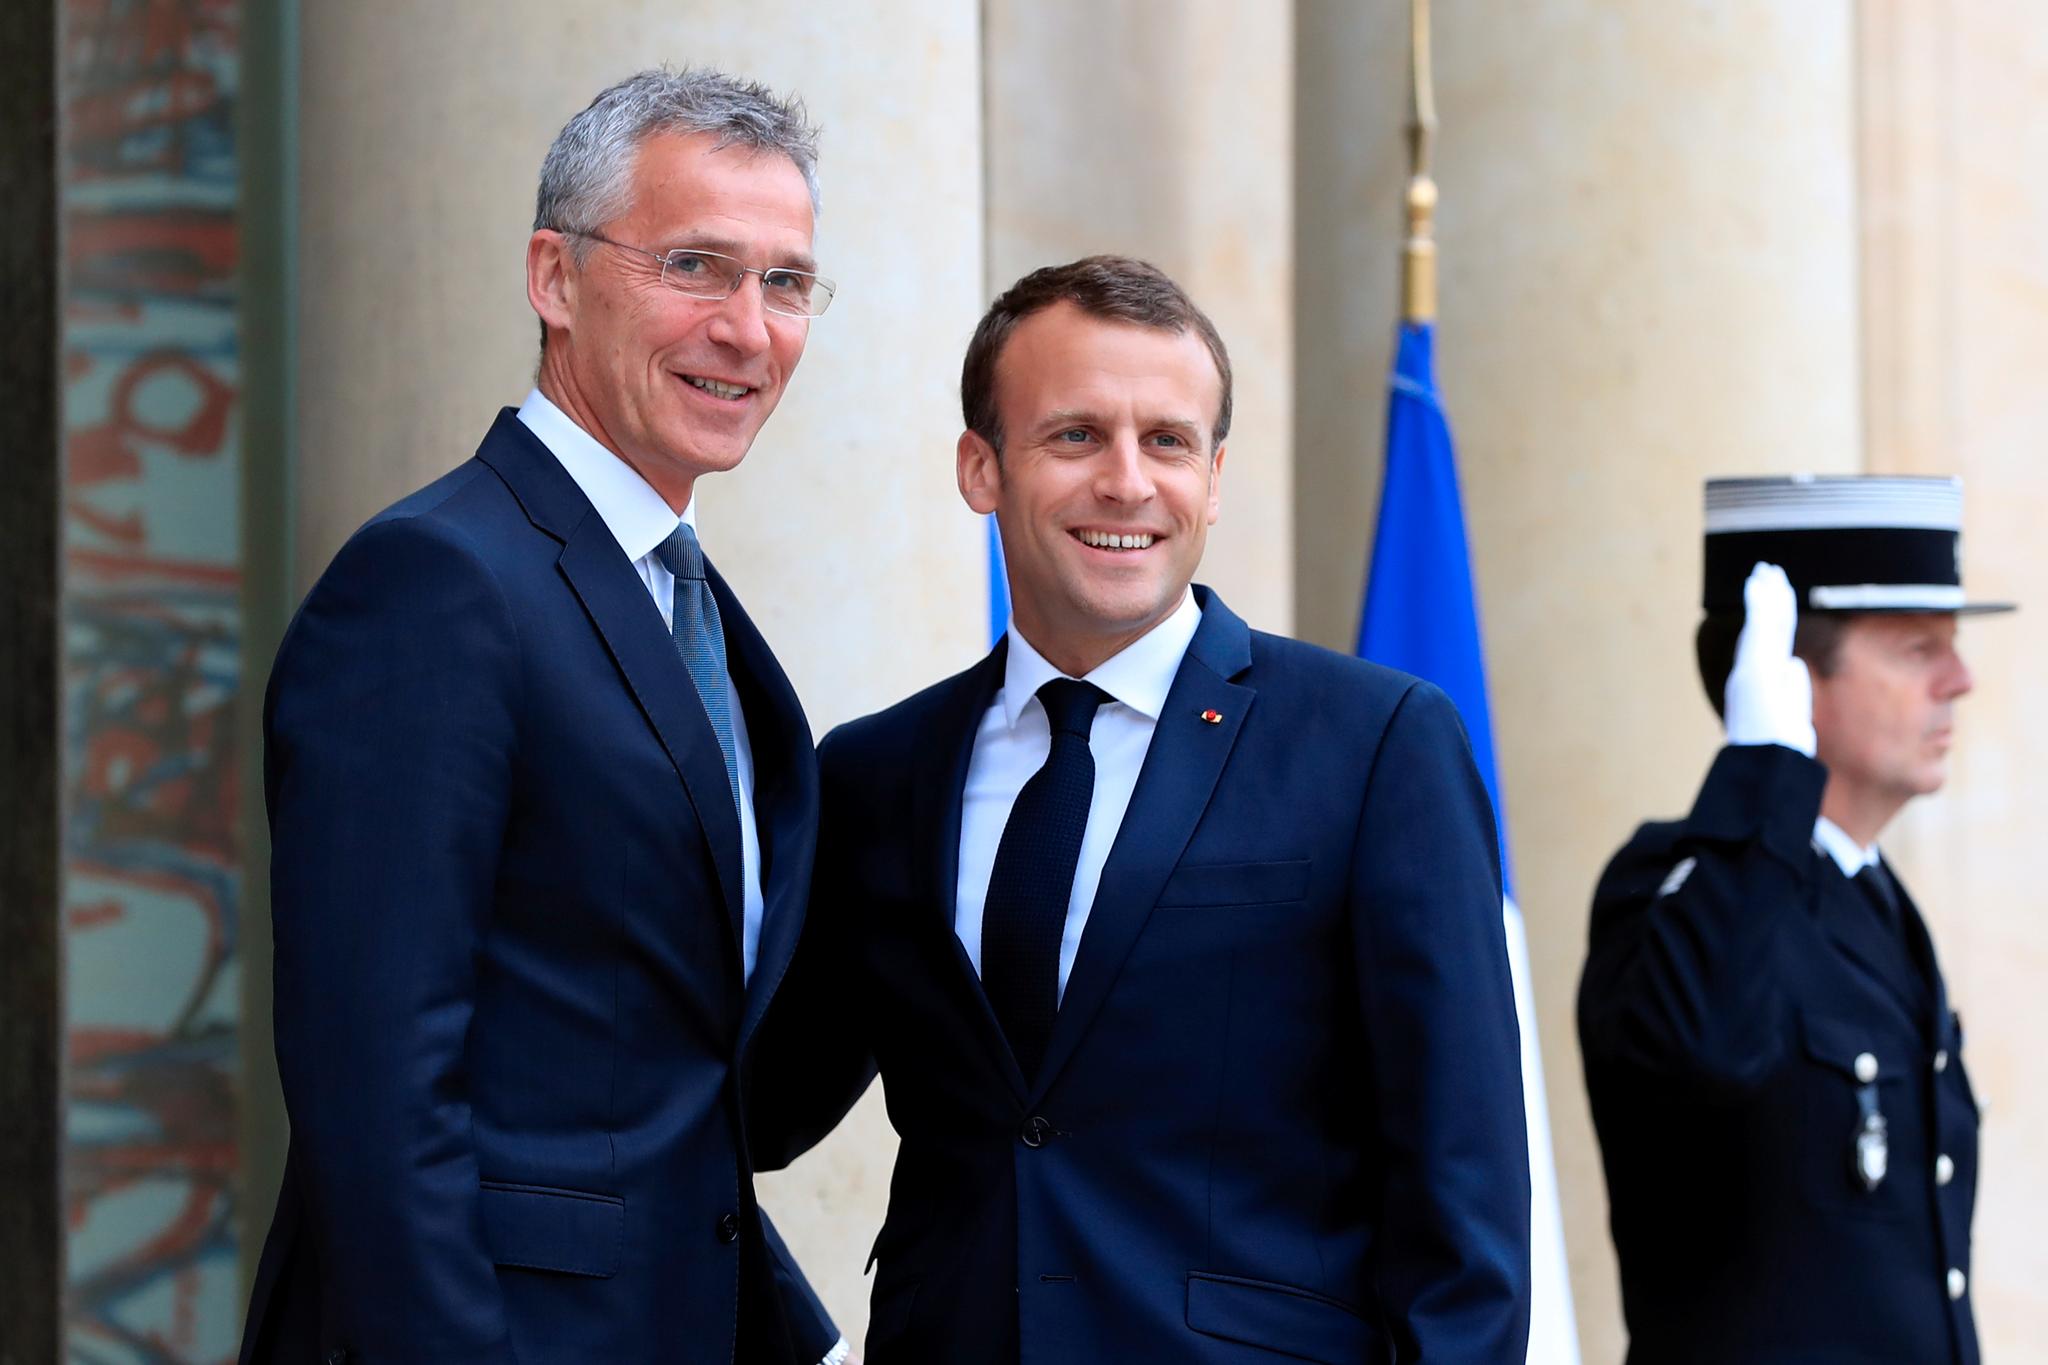 Frankrikes president Emmanuel Macron tar imot NATOs generalsekretær til et møte i Elyséepalasset i Paris i mai i år. Søndag møtes de igjen under minnemarkeringen for slutten på første verdenskrig.